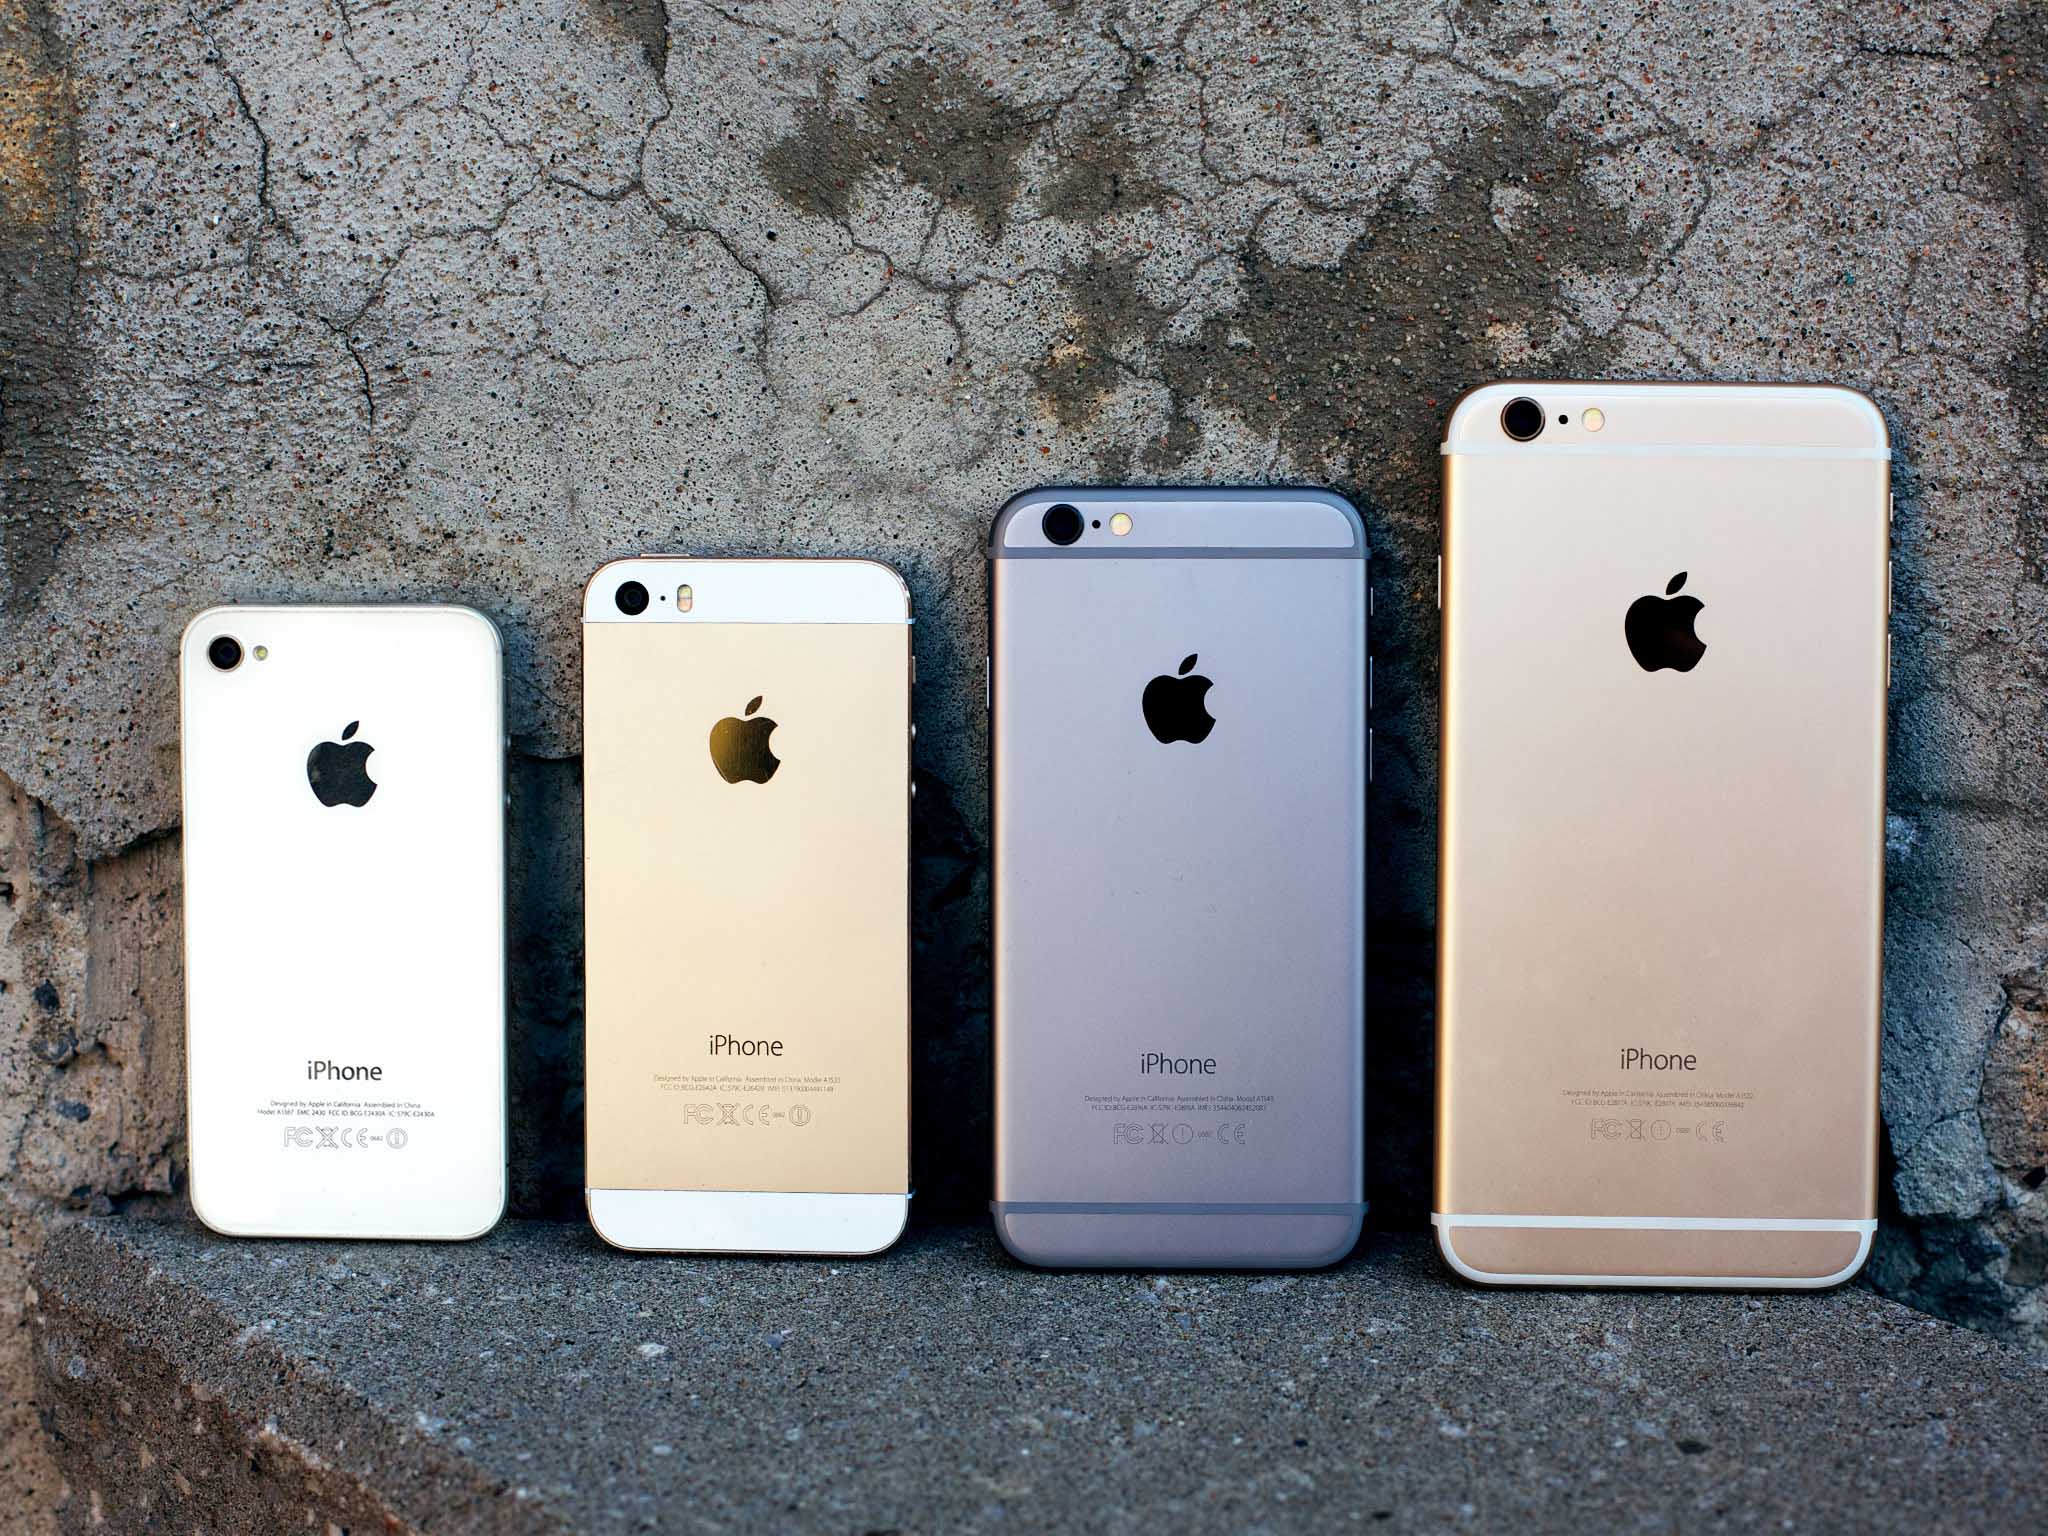 iphone 4s iphone 5s iphone 6 iPhone 6 plus back lineup 1